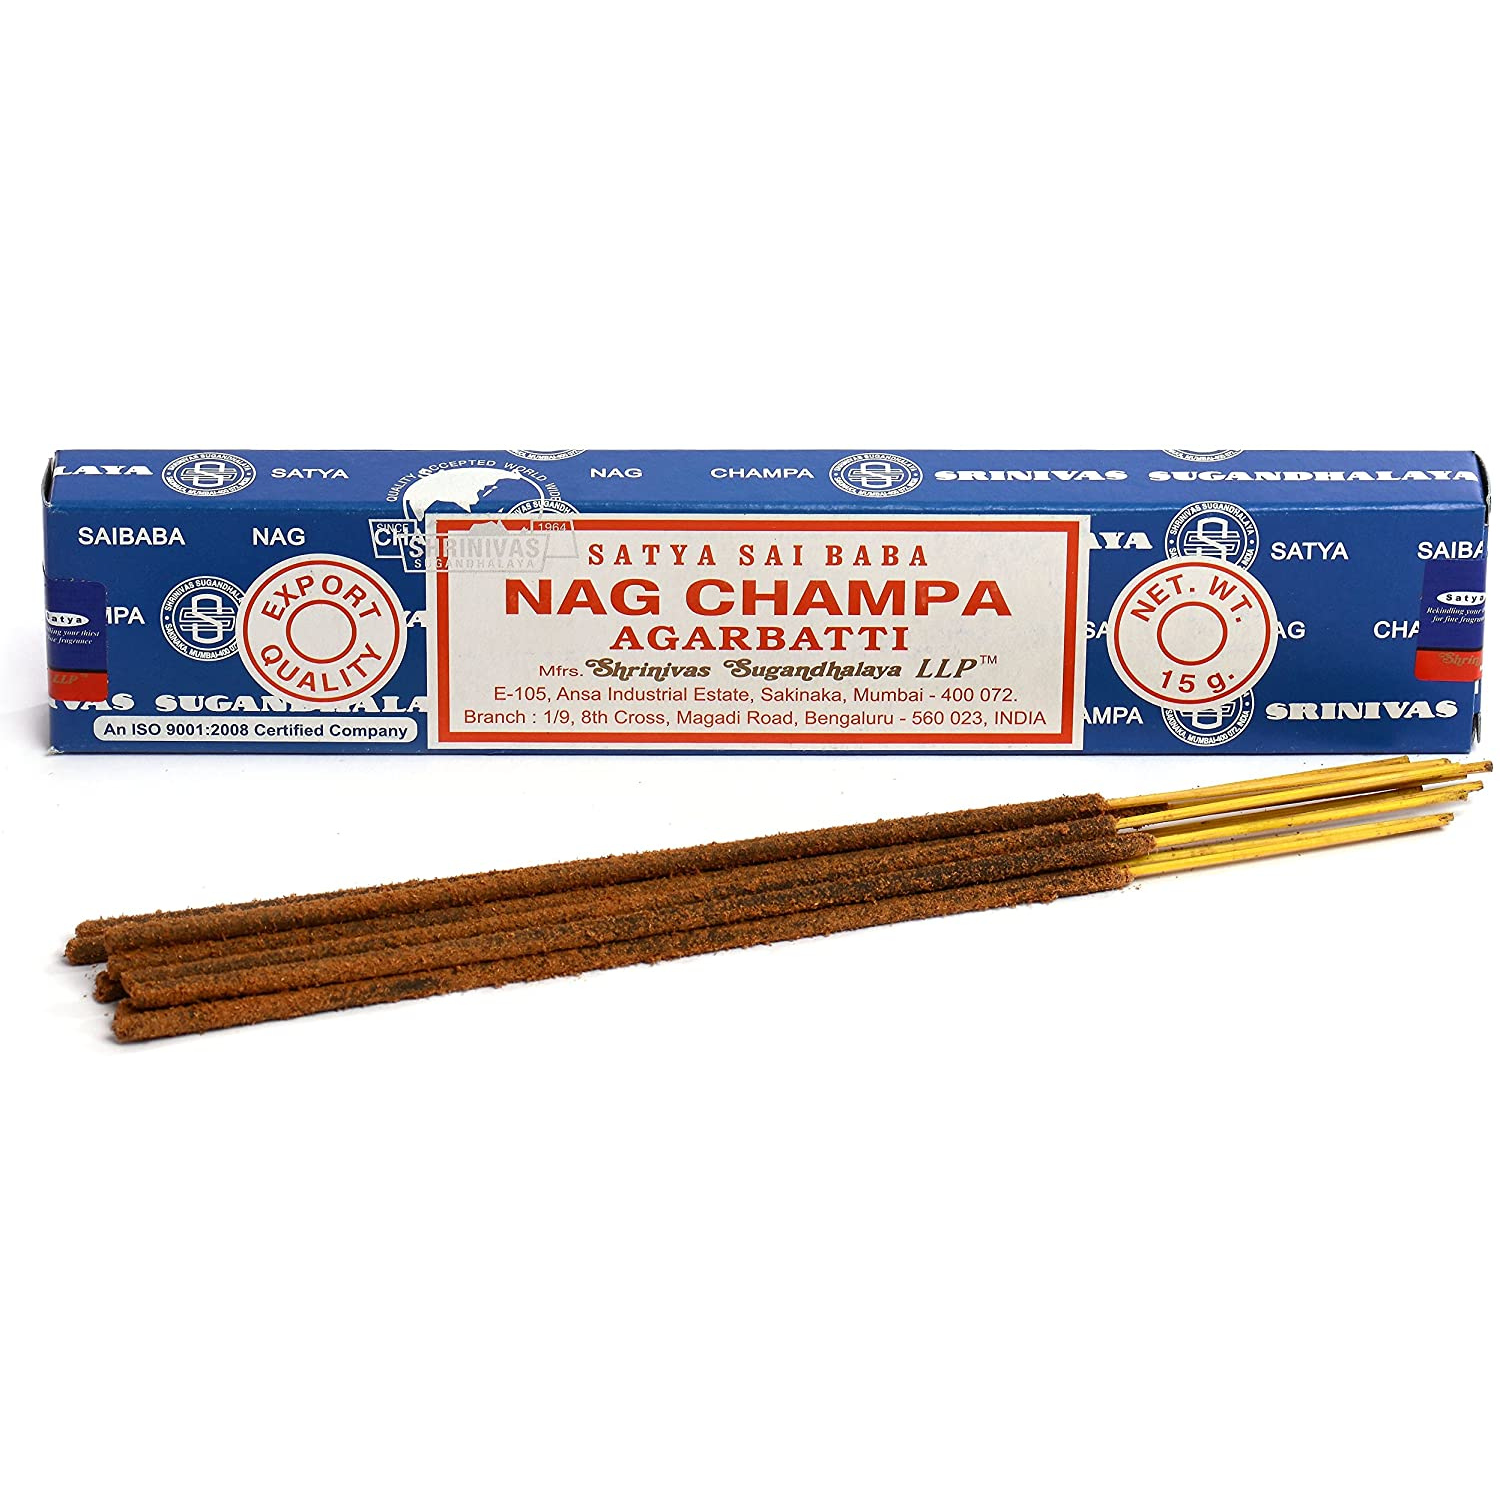 Satya Sai Baba Nag Champa 15g (Choose your Option ( 1 Box-12 packs of 15g each ) or (1 Packet-15g)